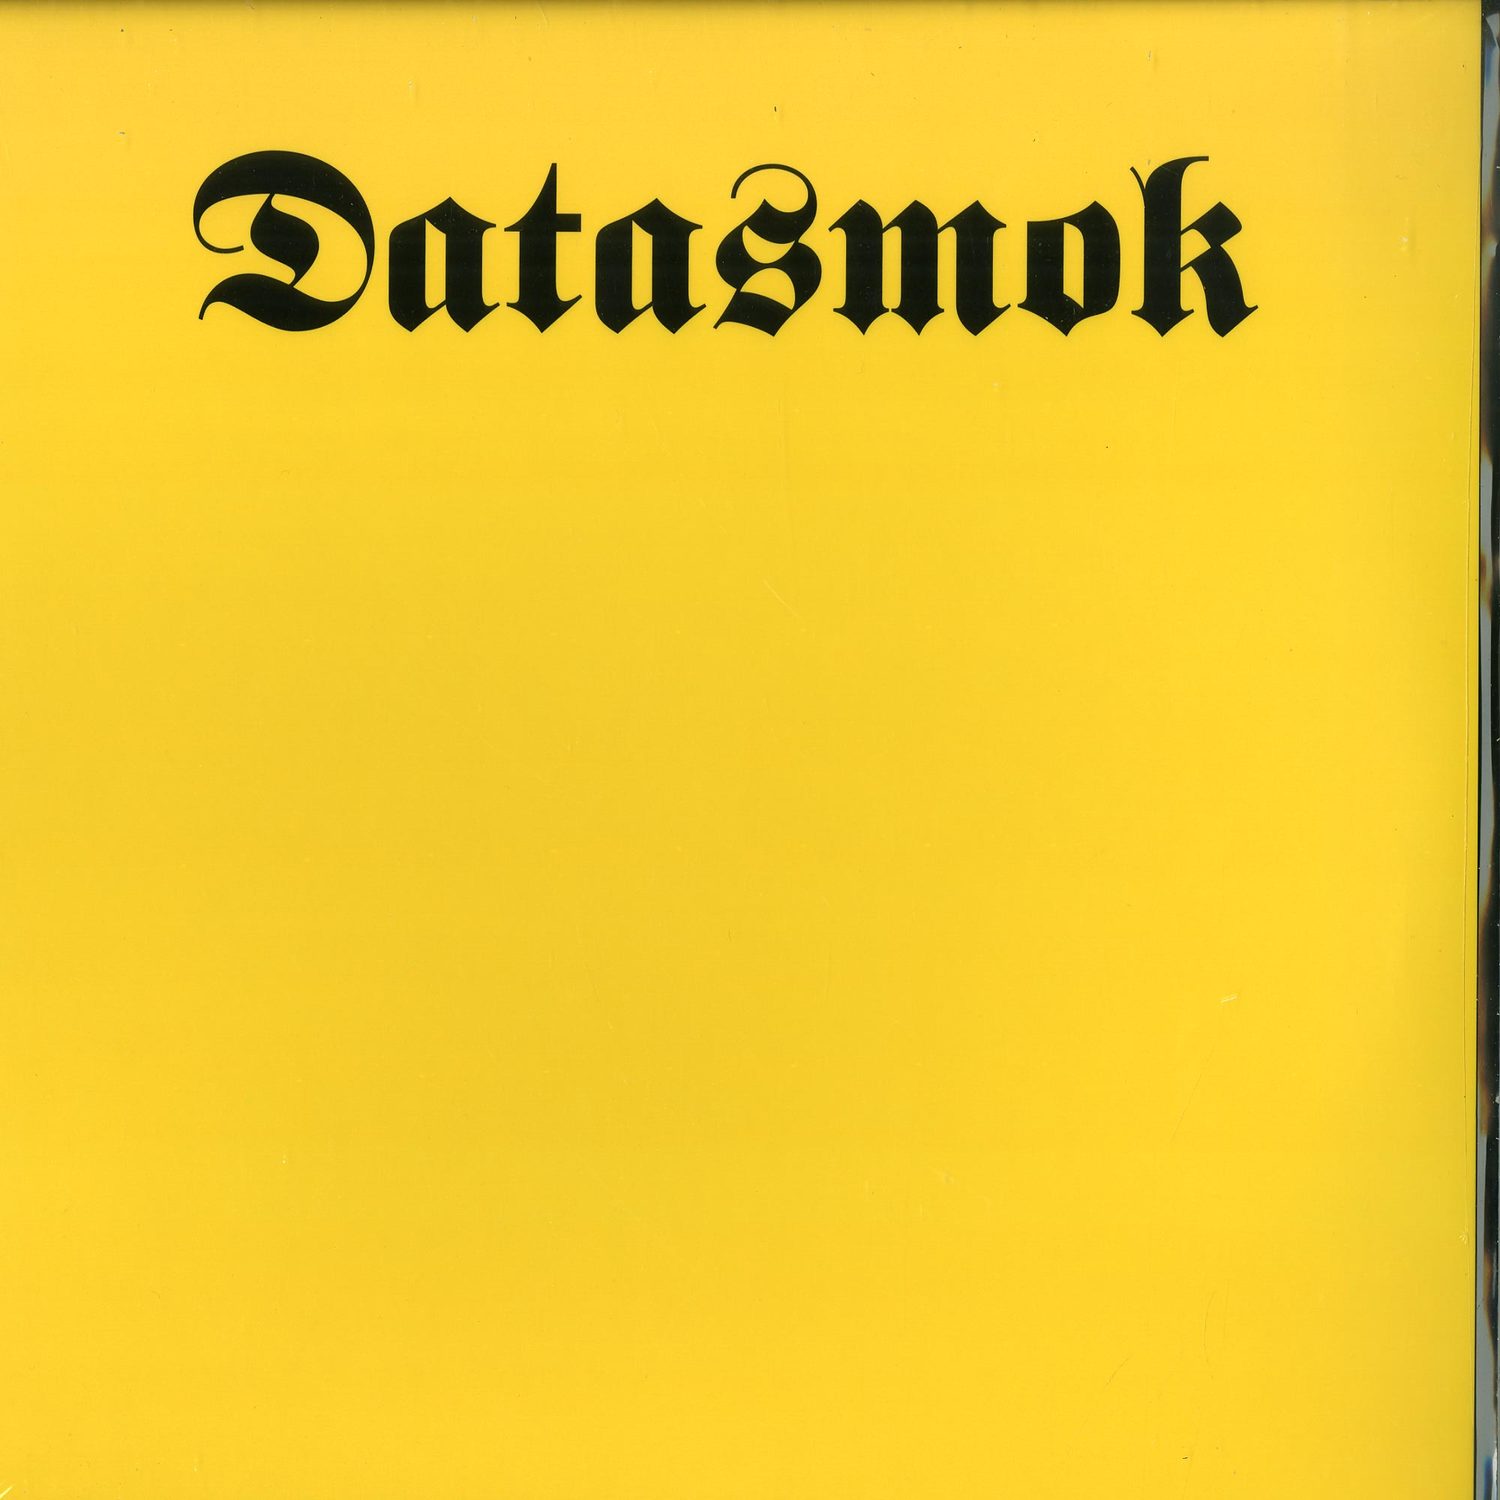 Datasmok - KNEE DEEP IN MUD EP